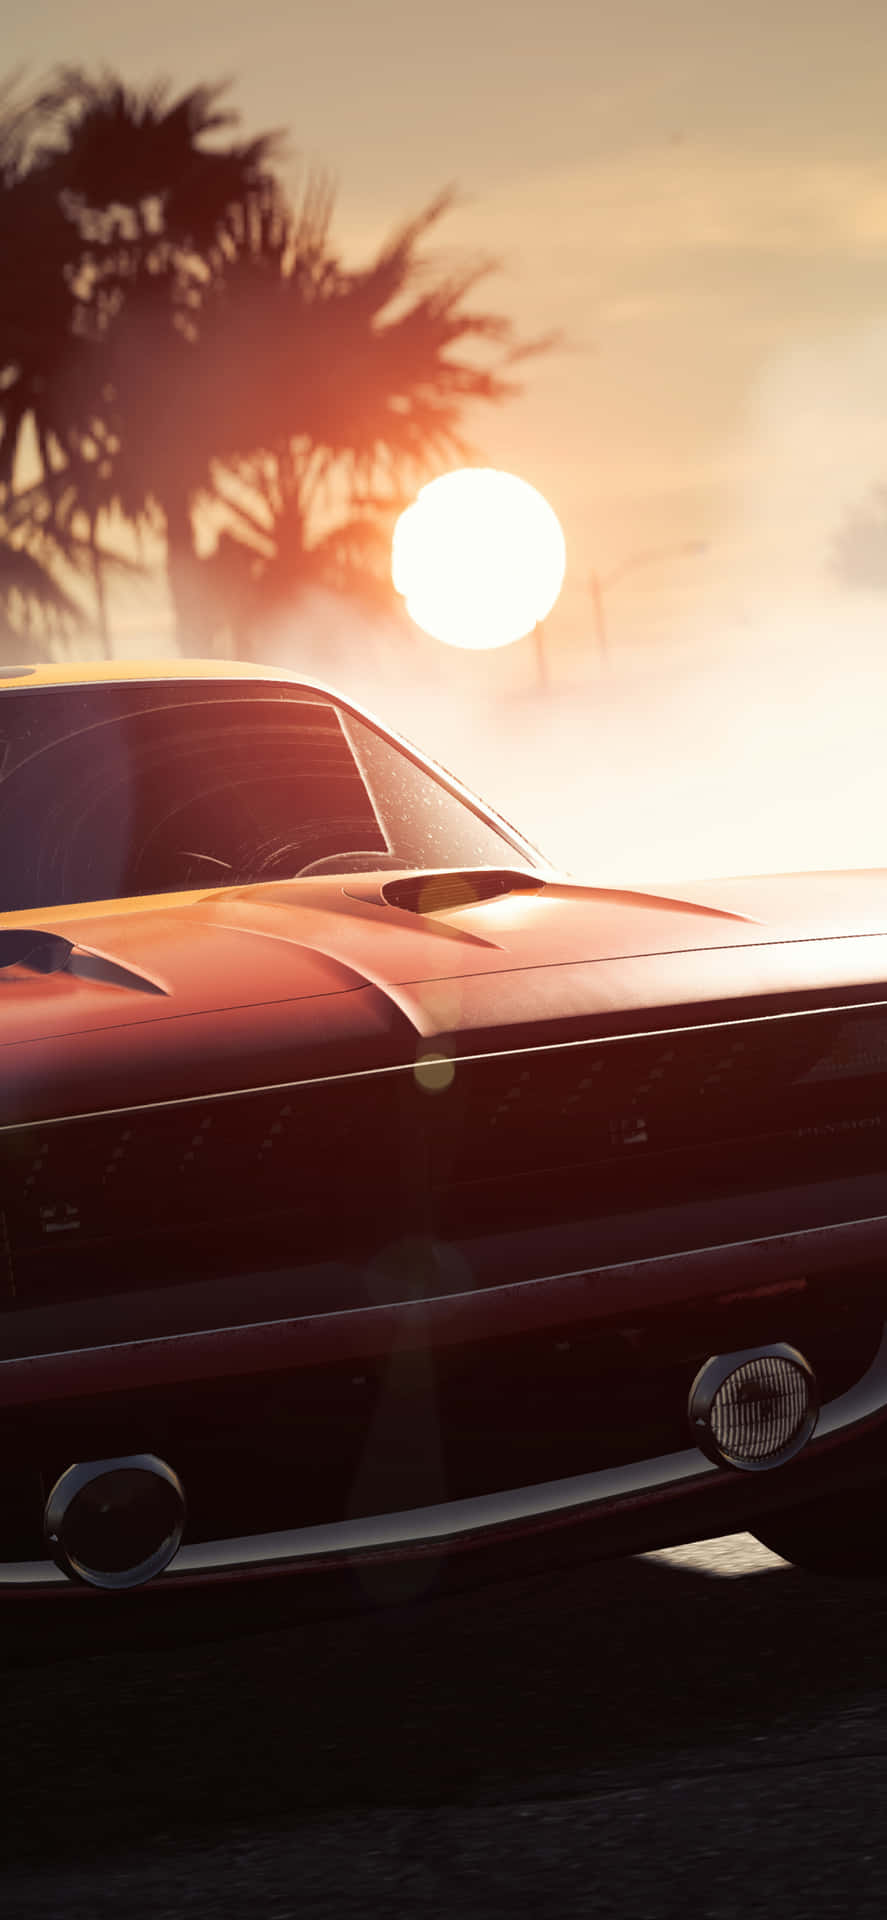 Iphonexs Bakgrundsbild För Need For Speed Payback Med En Kopparfärgad Dodge Challenger.